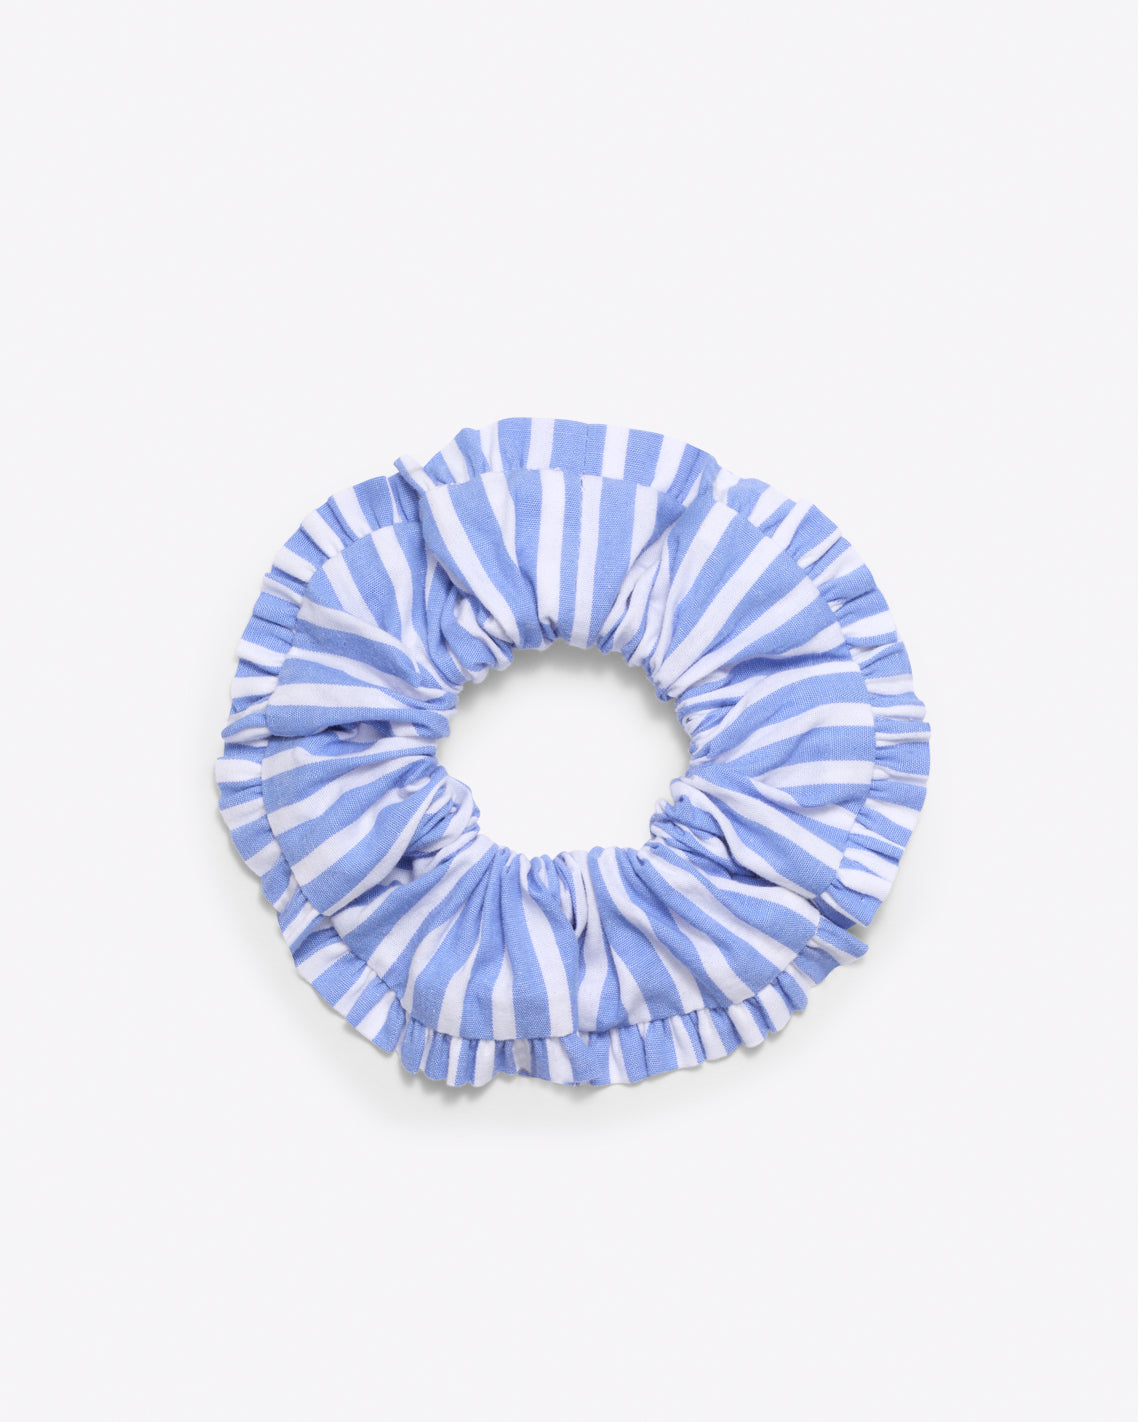 Ruffle Scrunchie in Blue Stripe